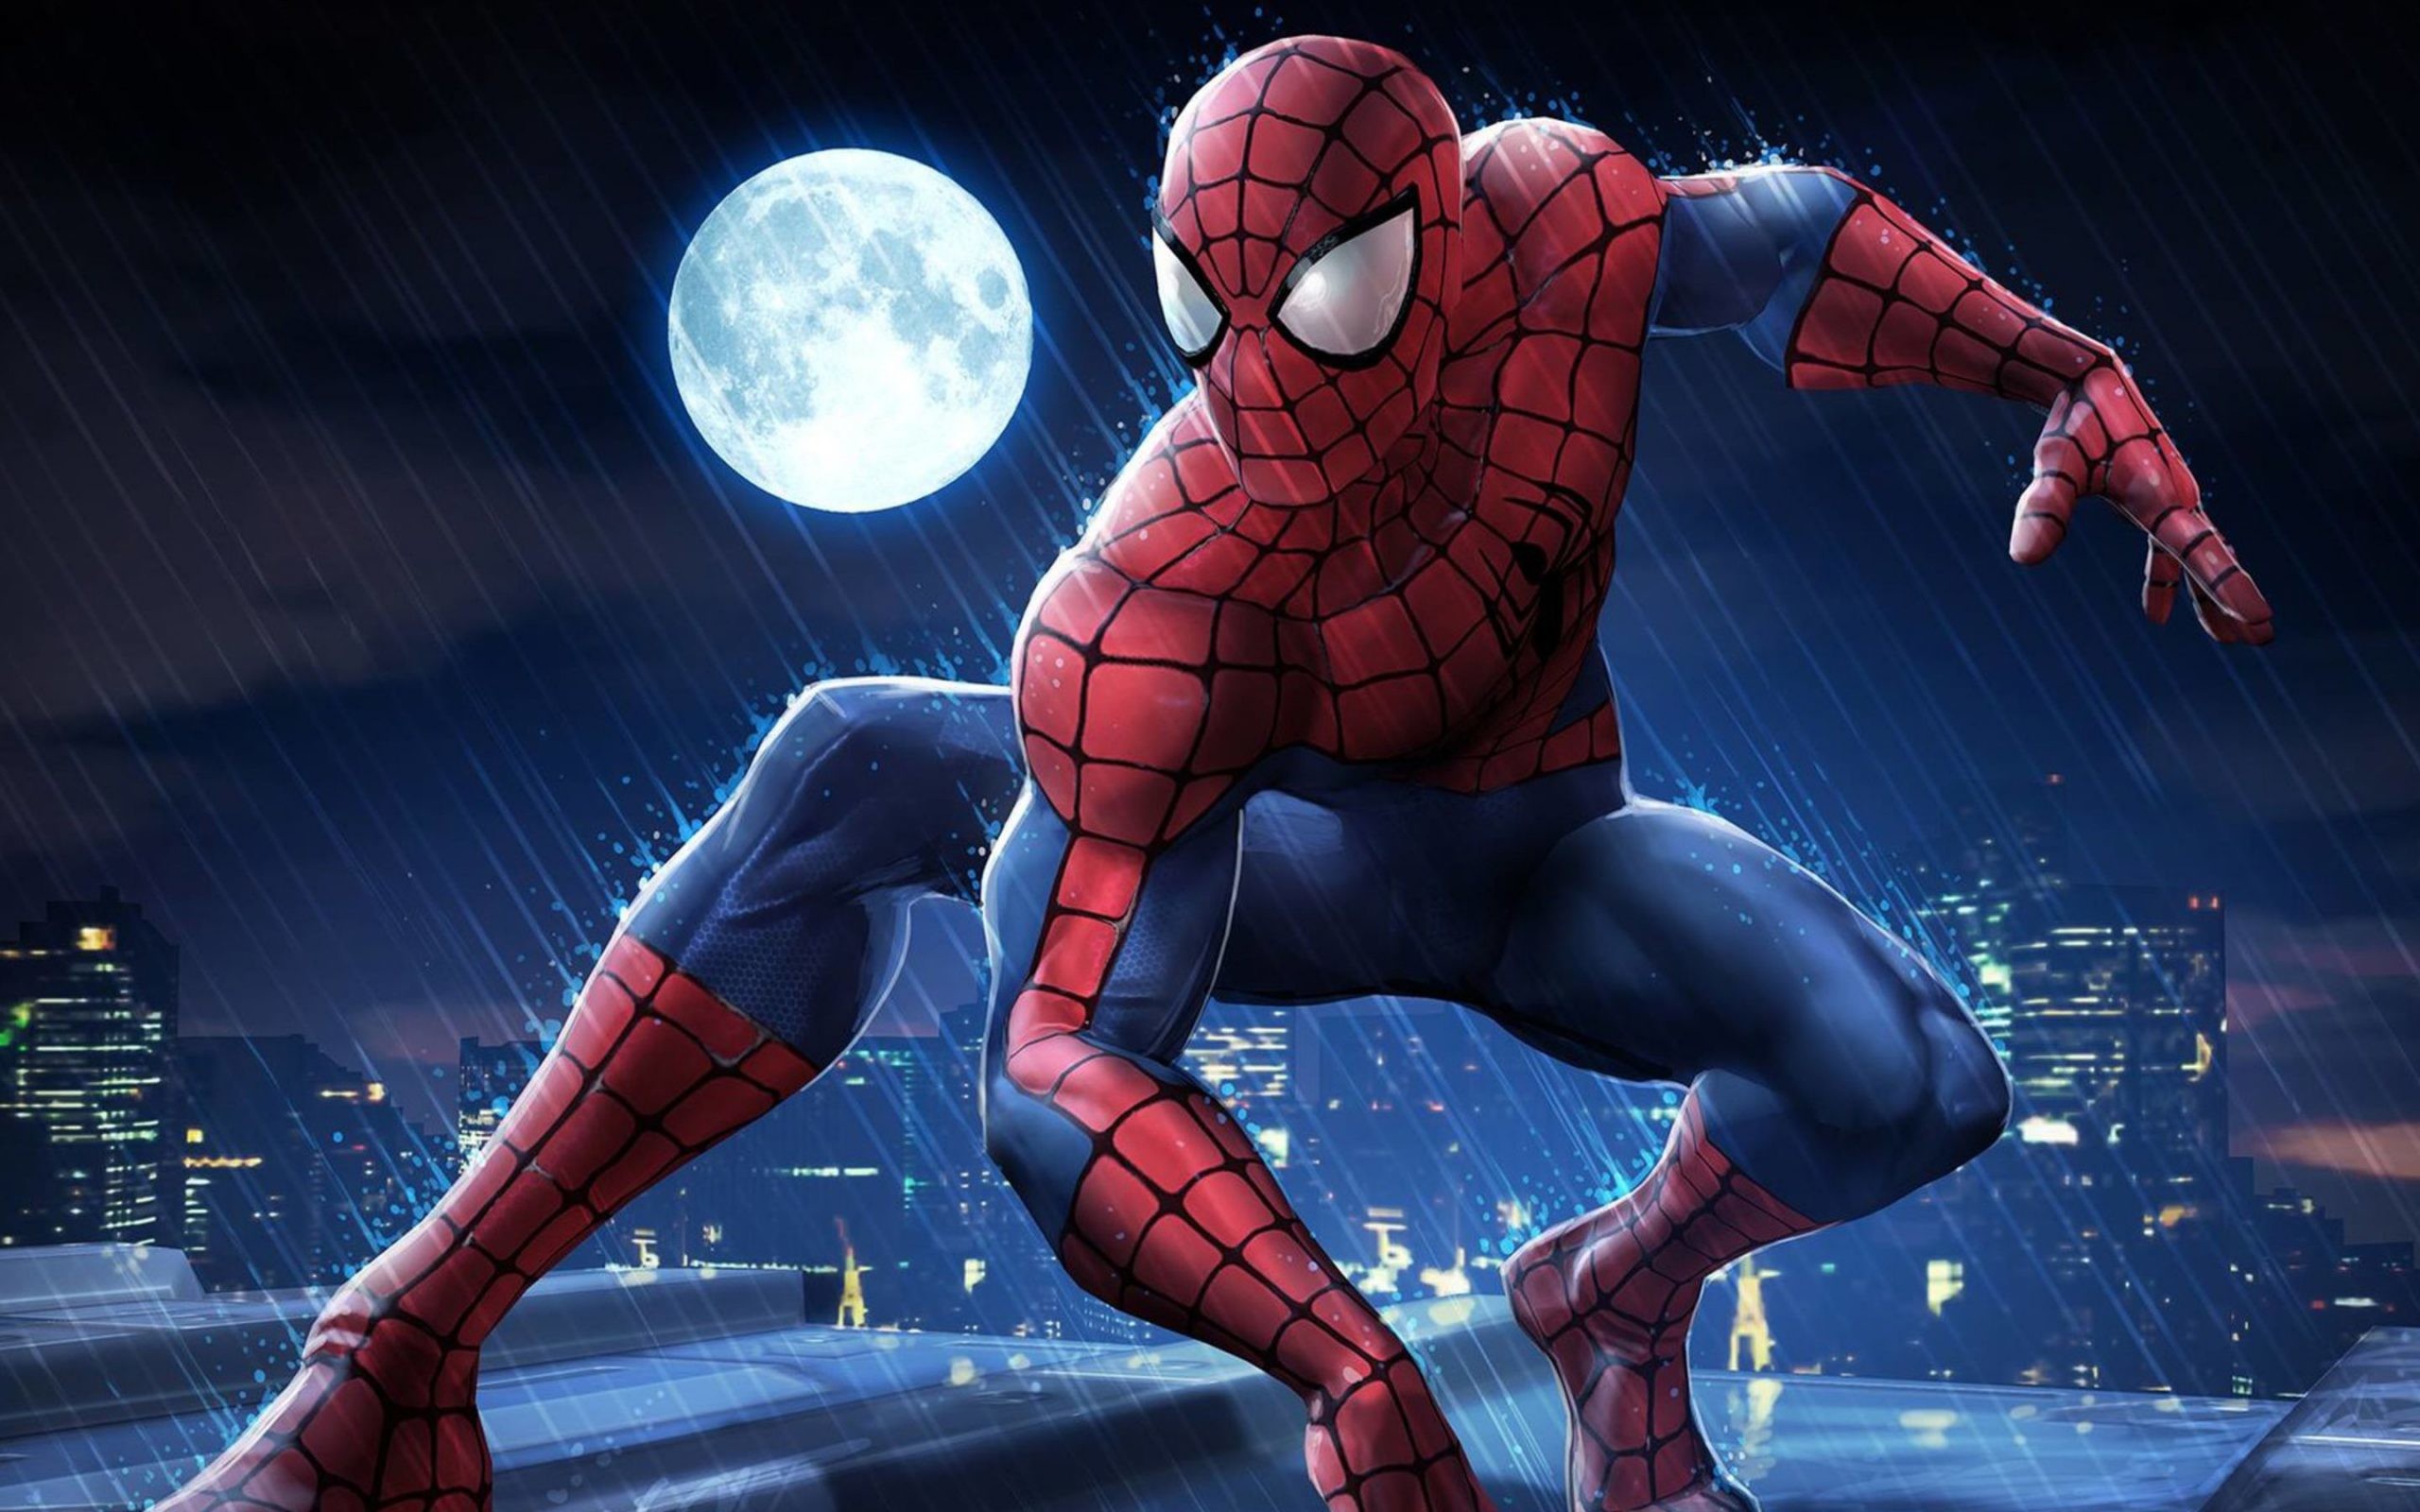 Hình Ảnh Spider Man - Người Nhện Đẹp Ngầu, Chất Lượng Full Hd, 4K